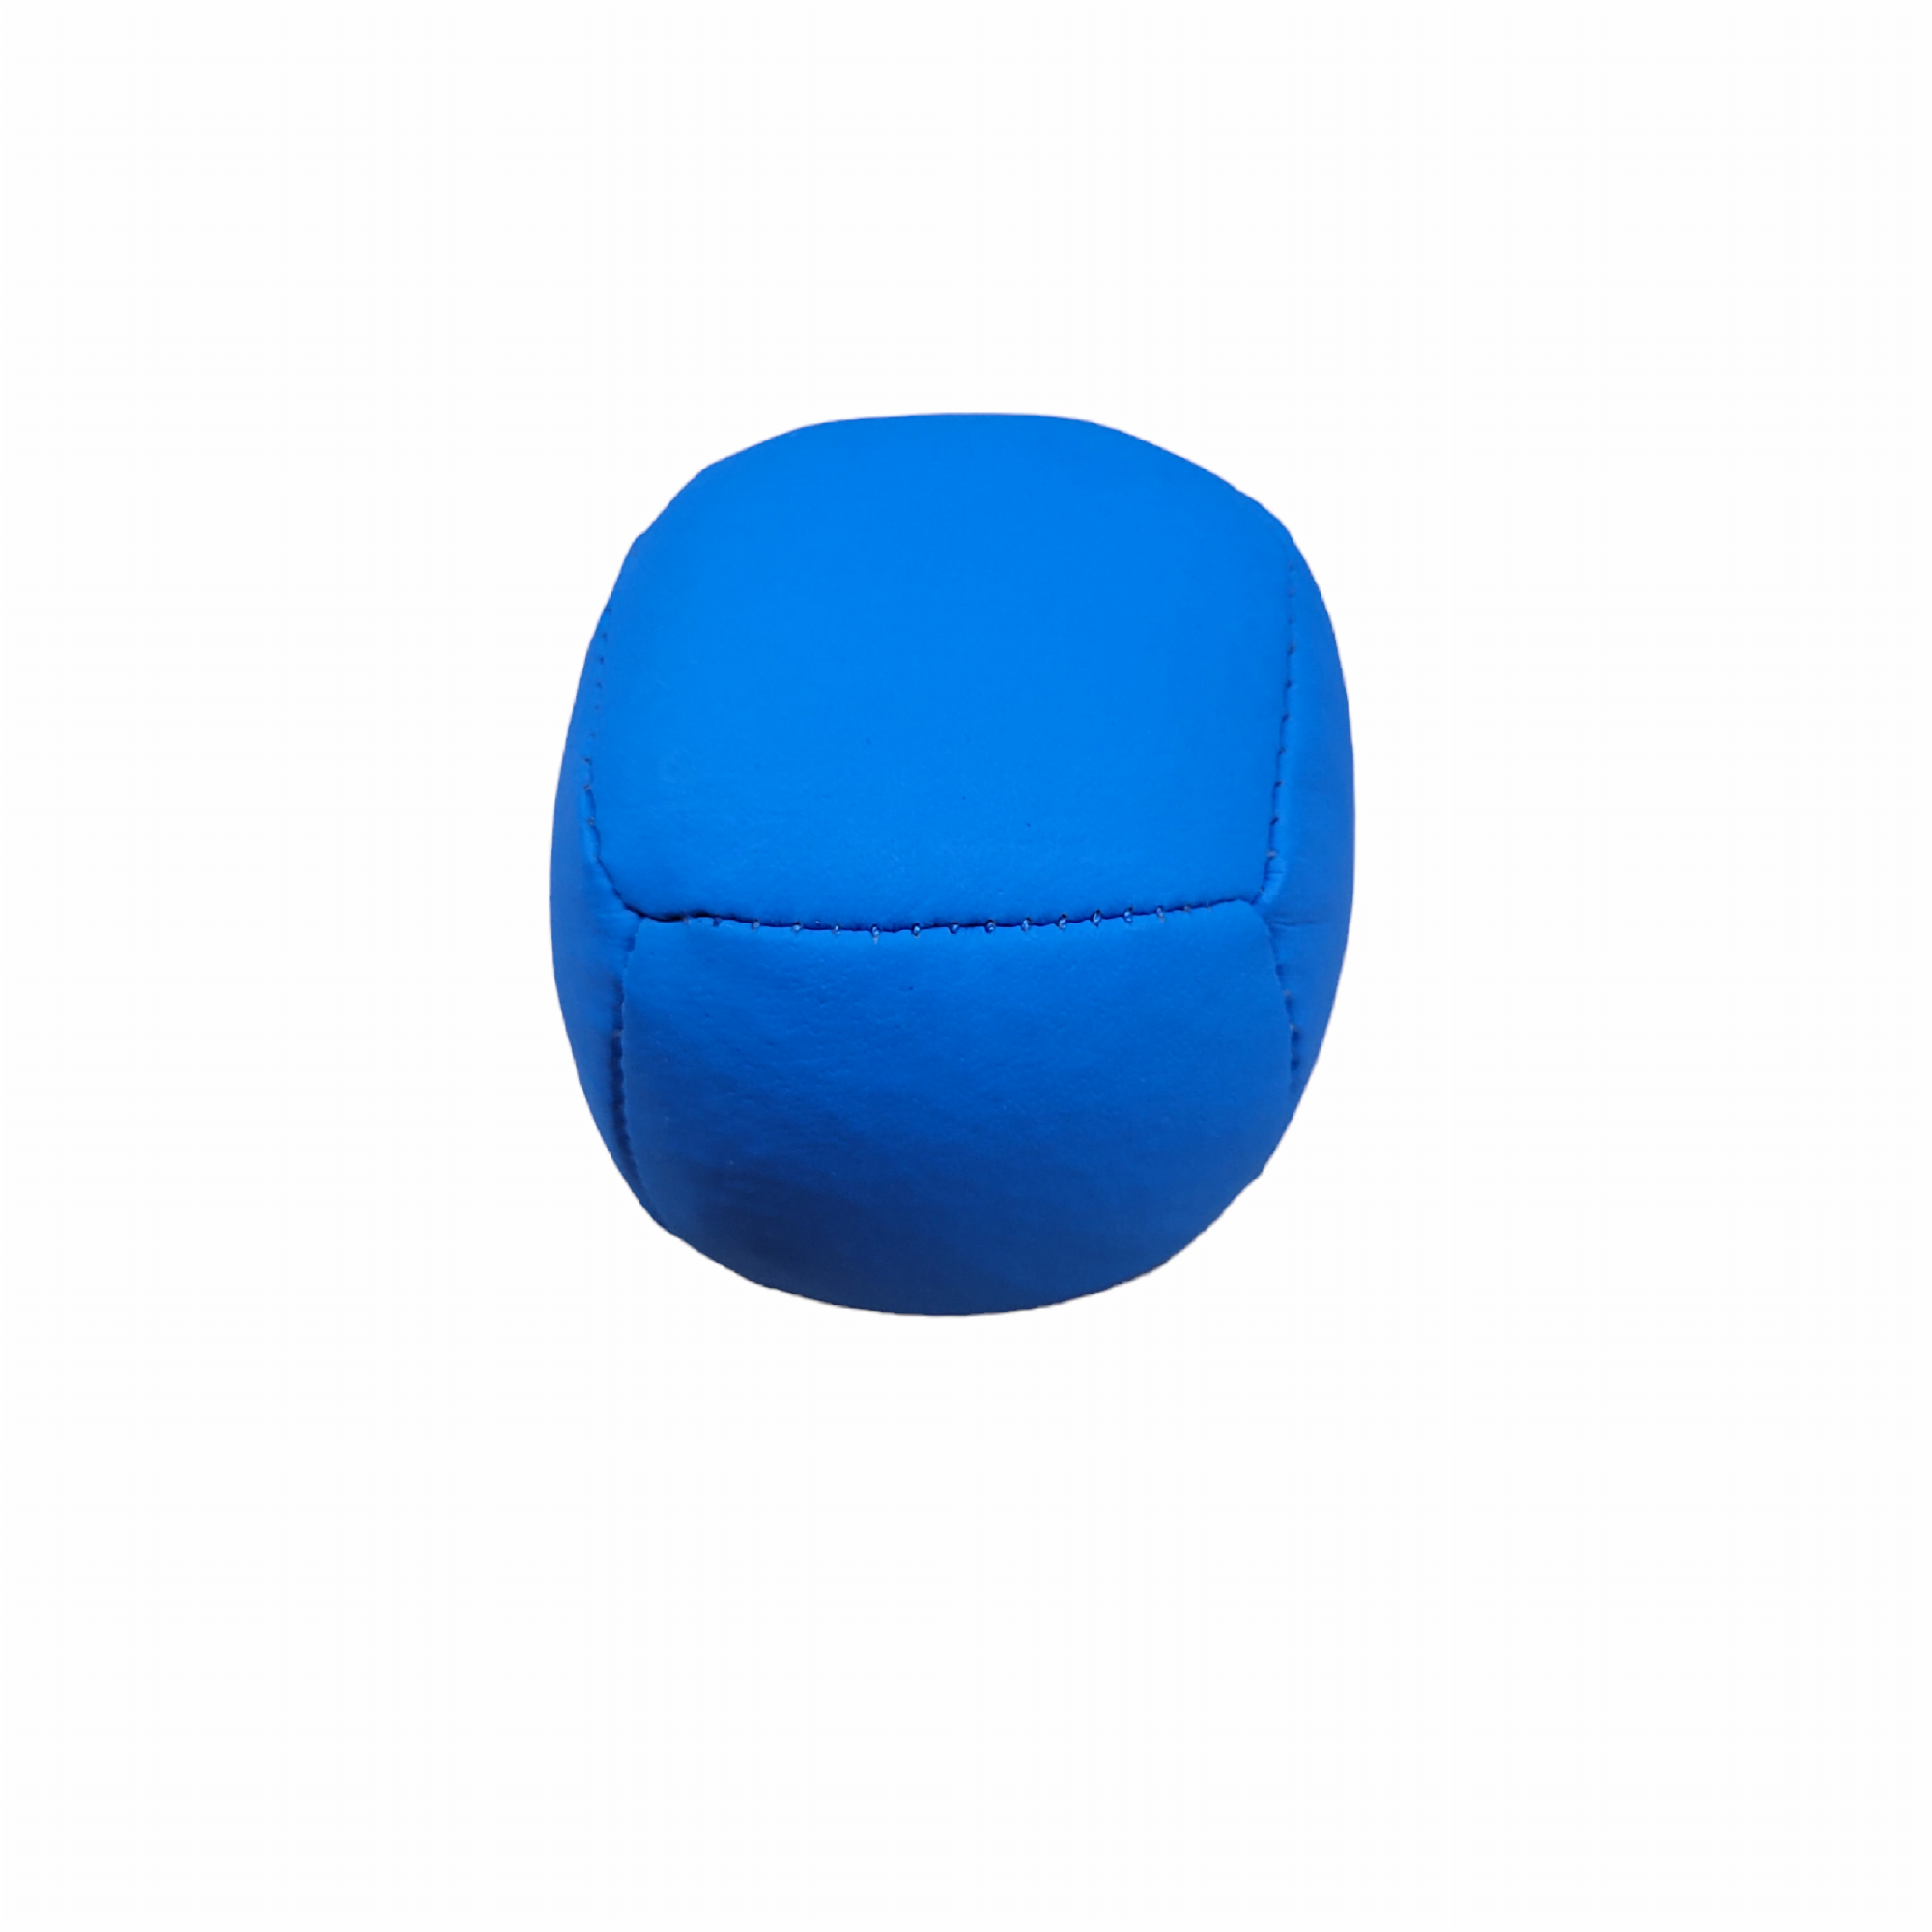 90g Sport Juggling Ball - Blue